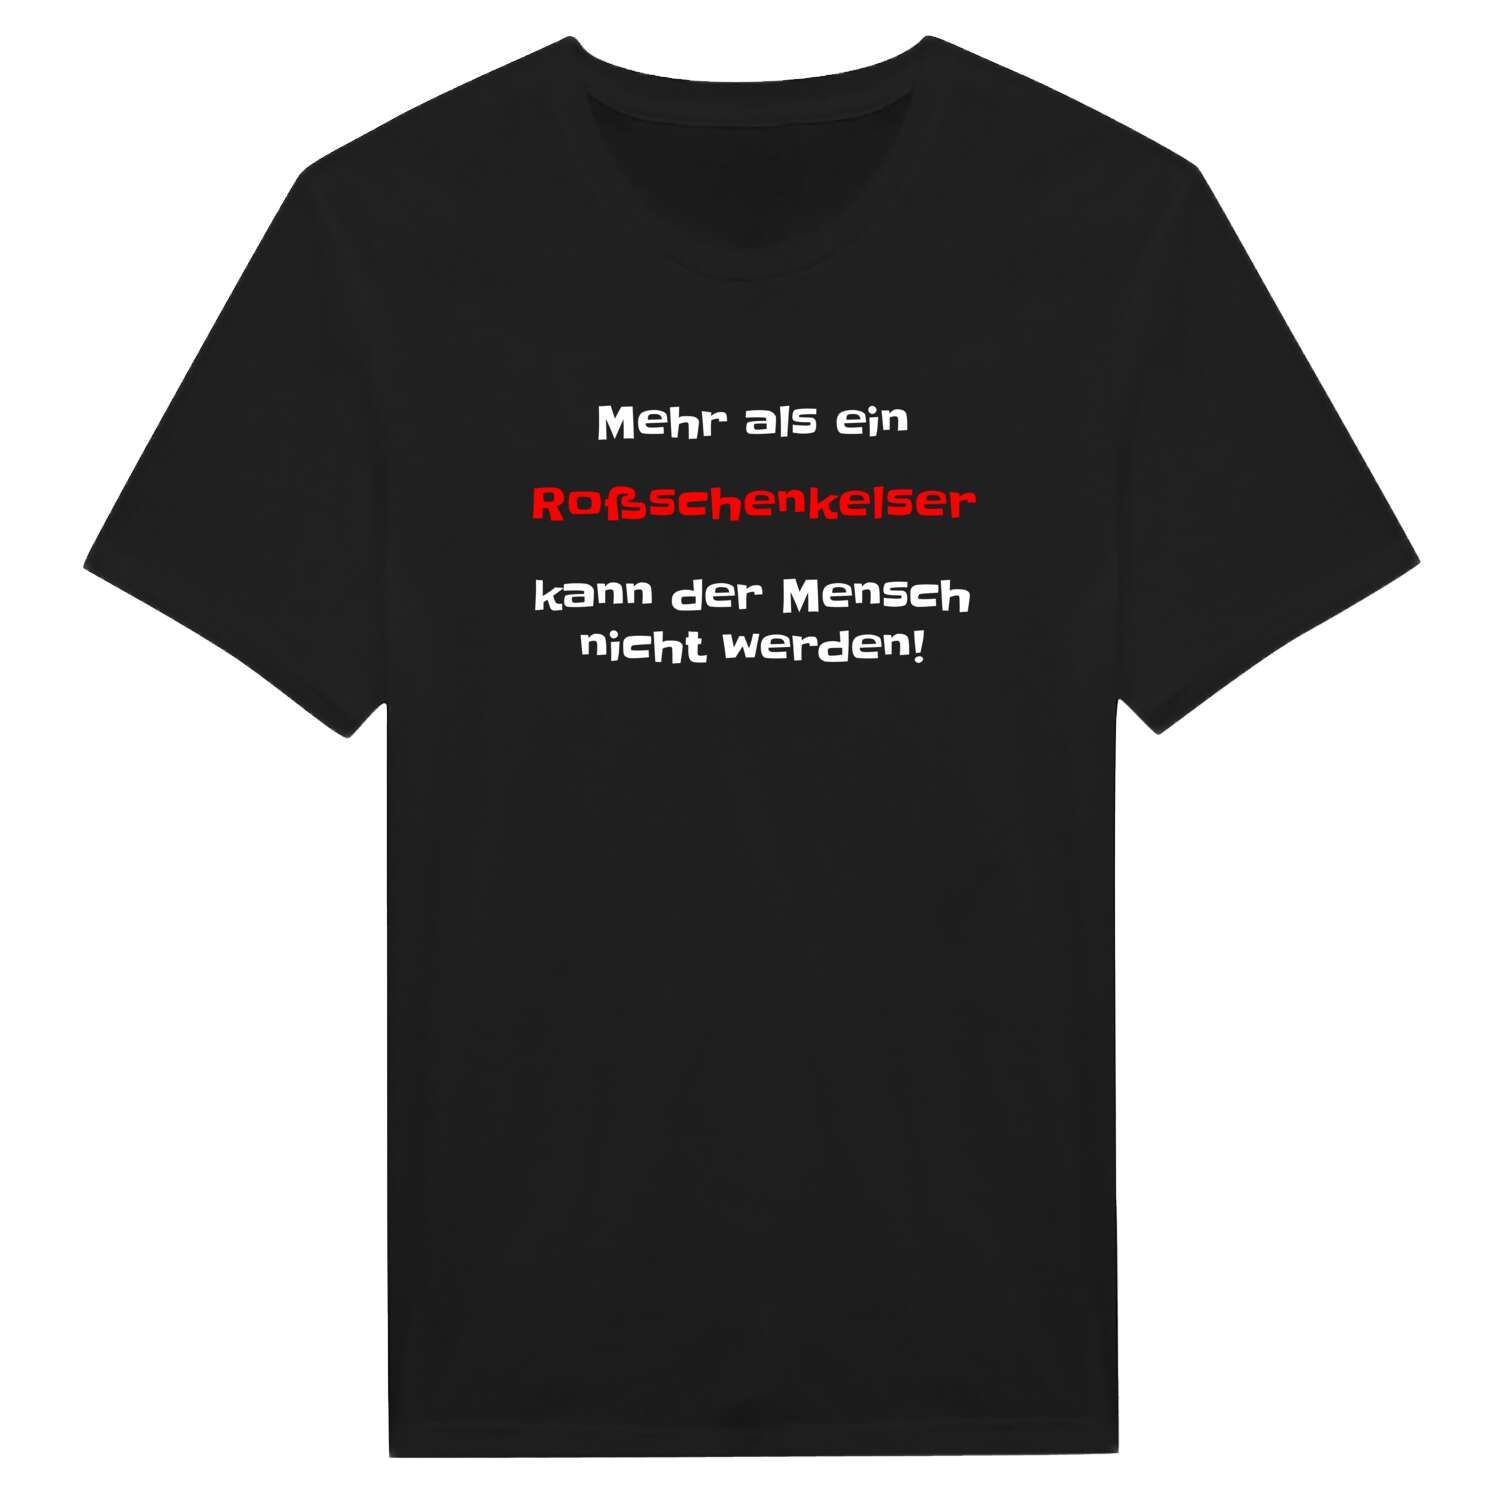 Roßschenkels T-Shirt »Mehr als ein«